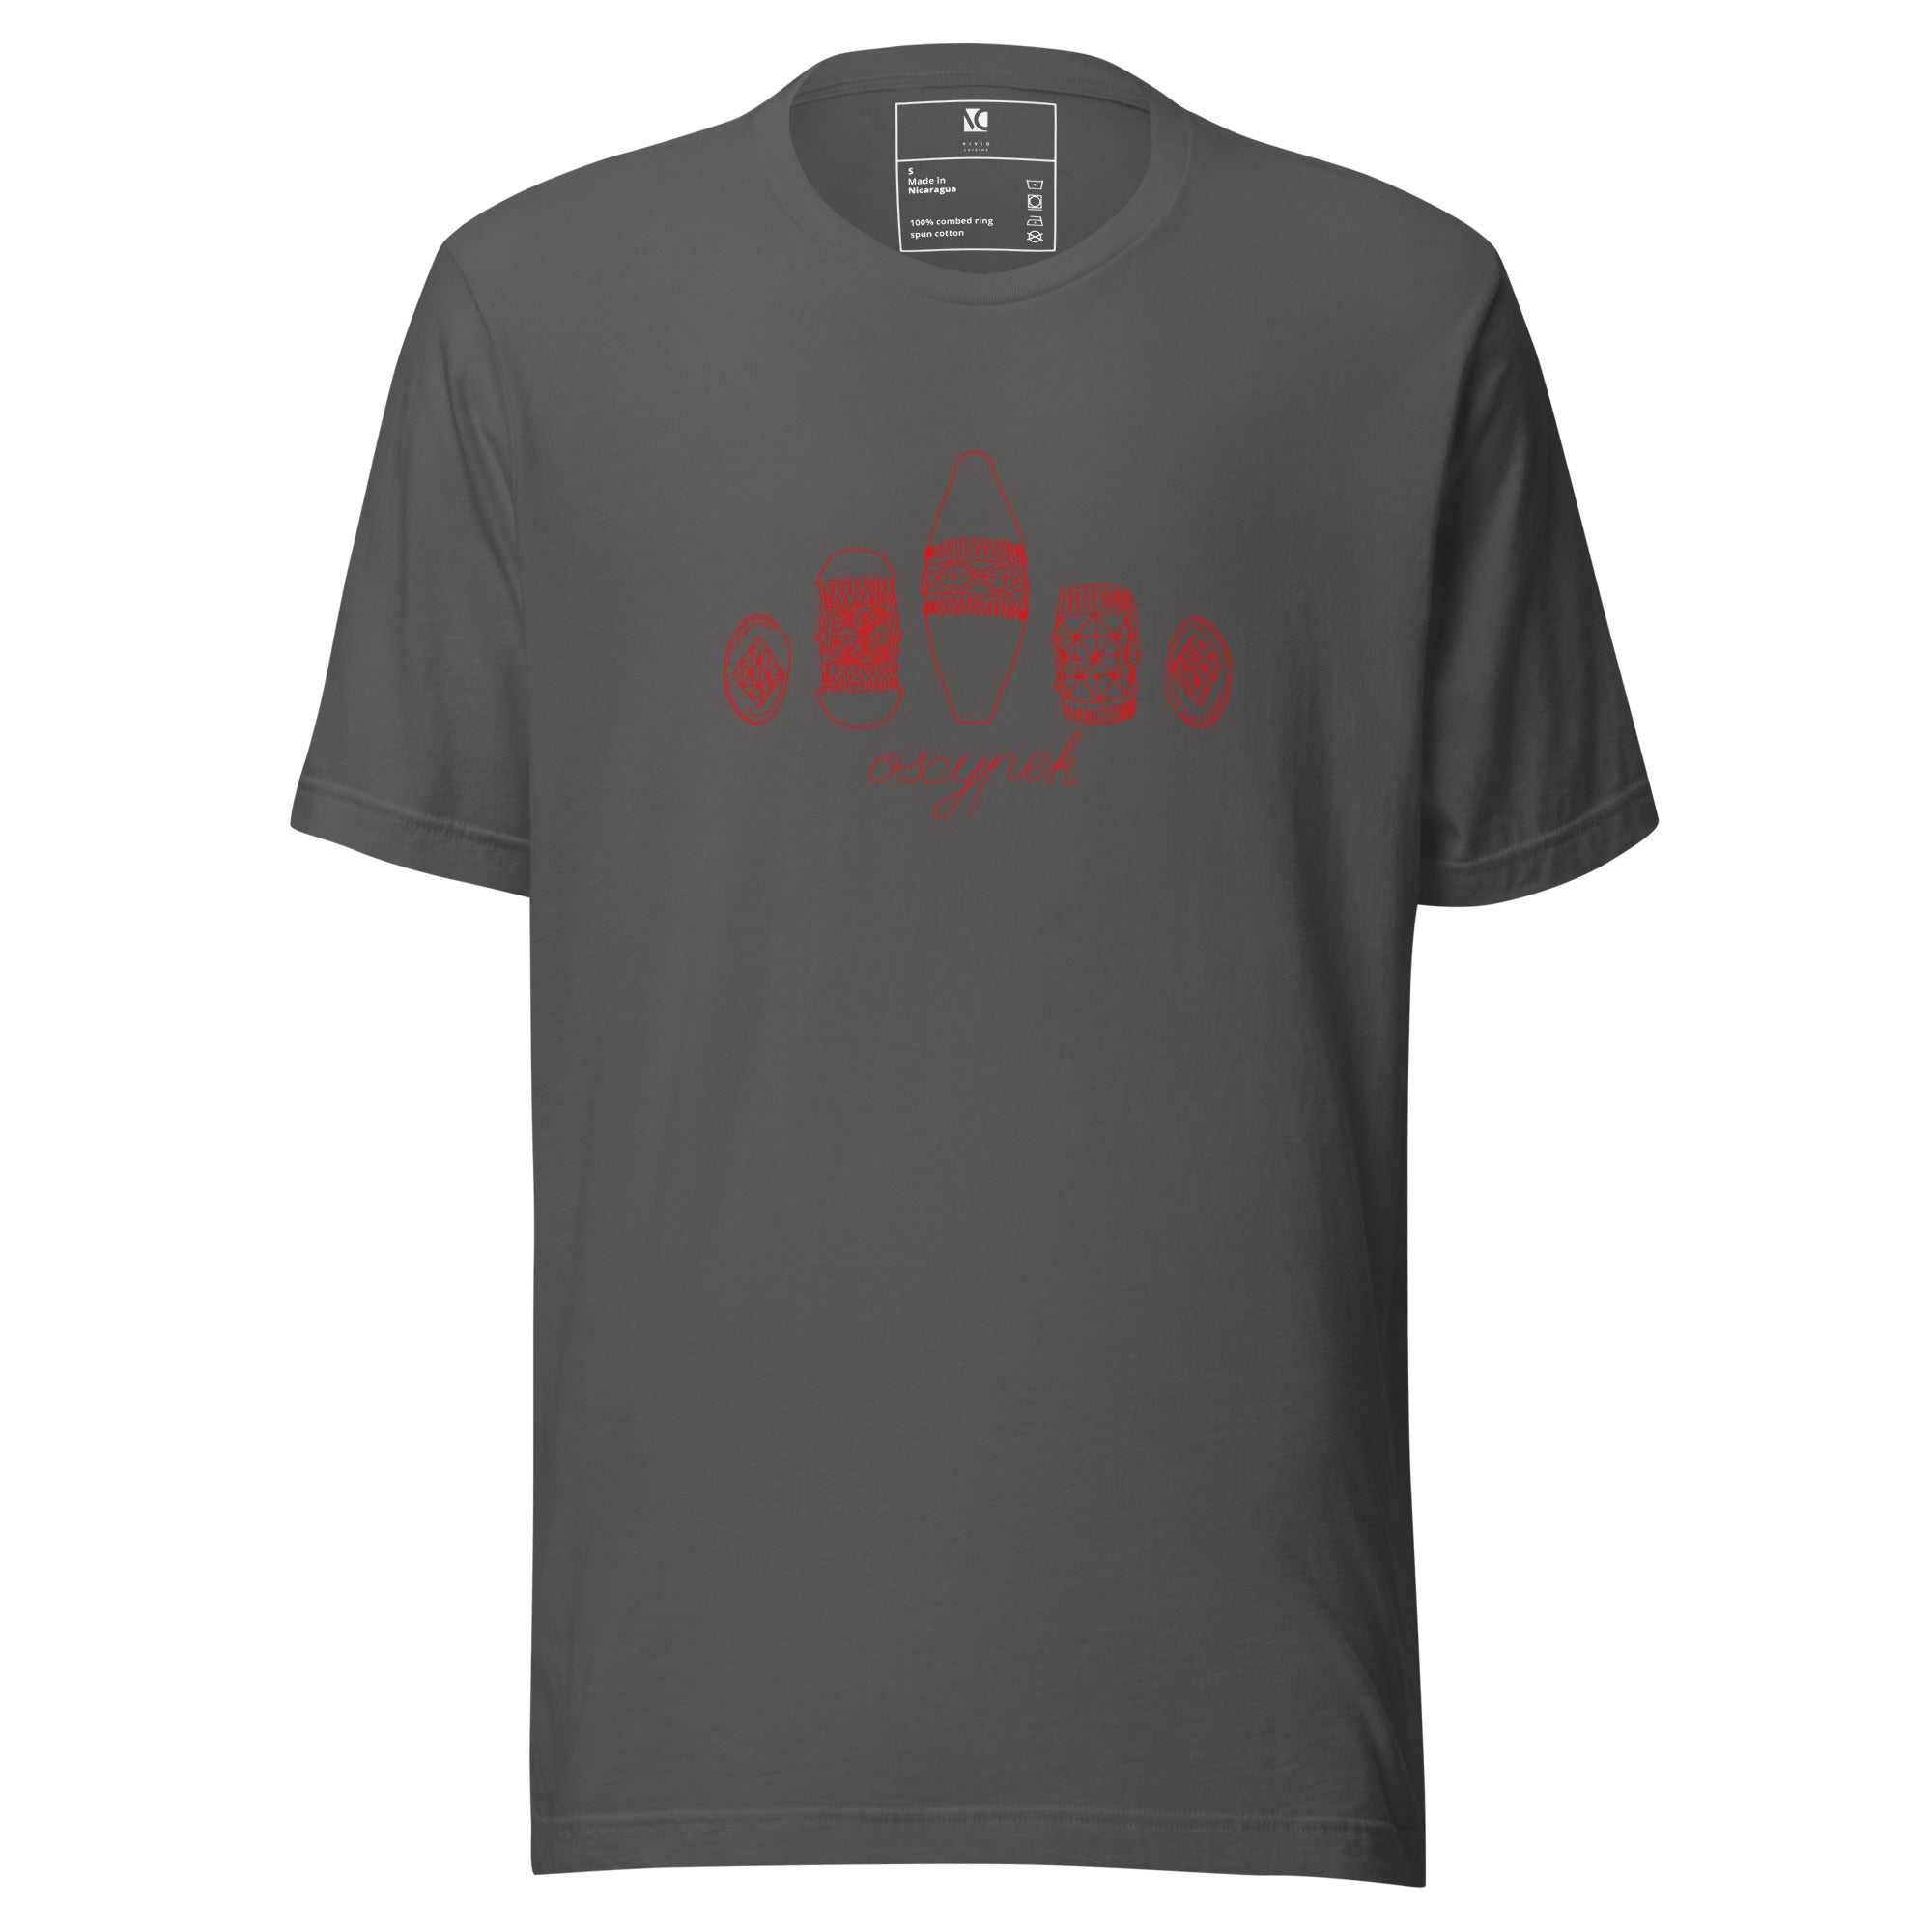 Oscypek (R) - Unisex T-Shirt